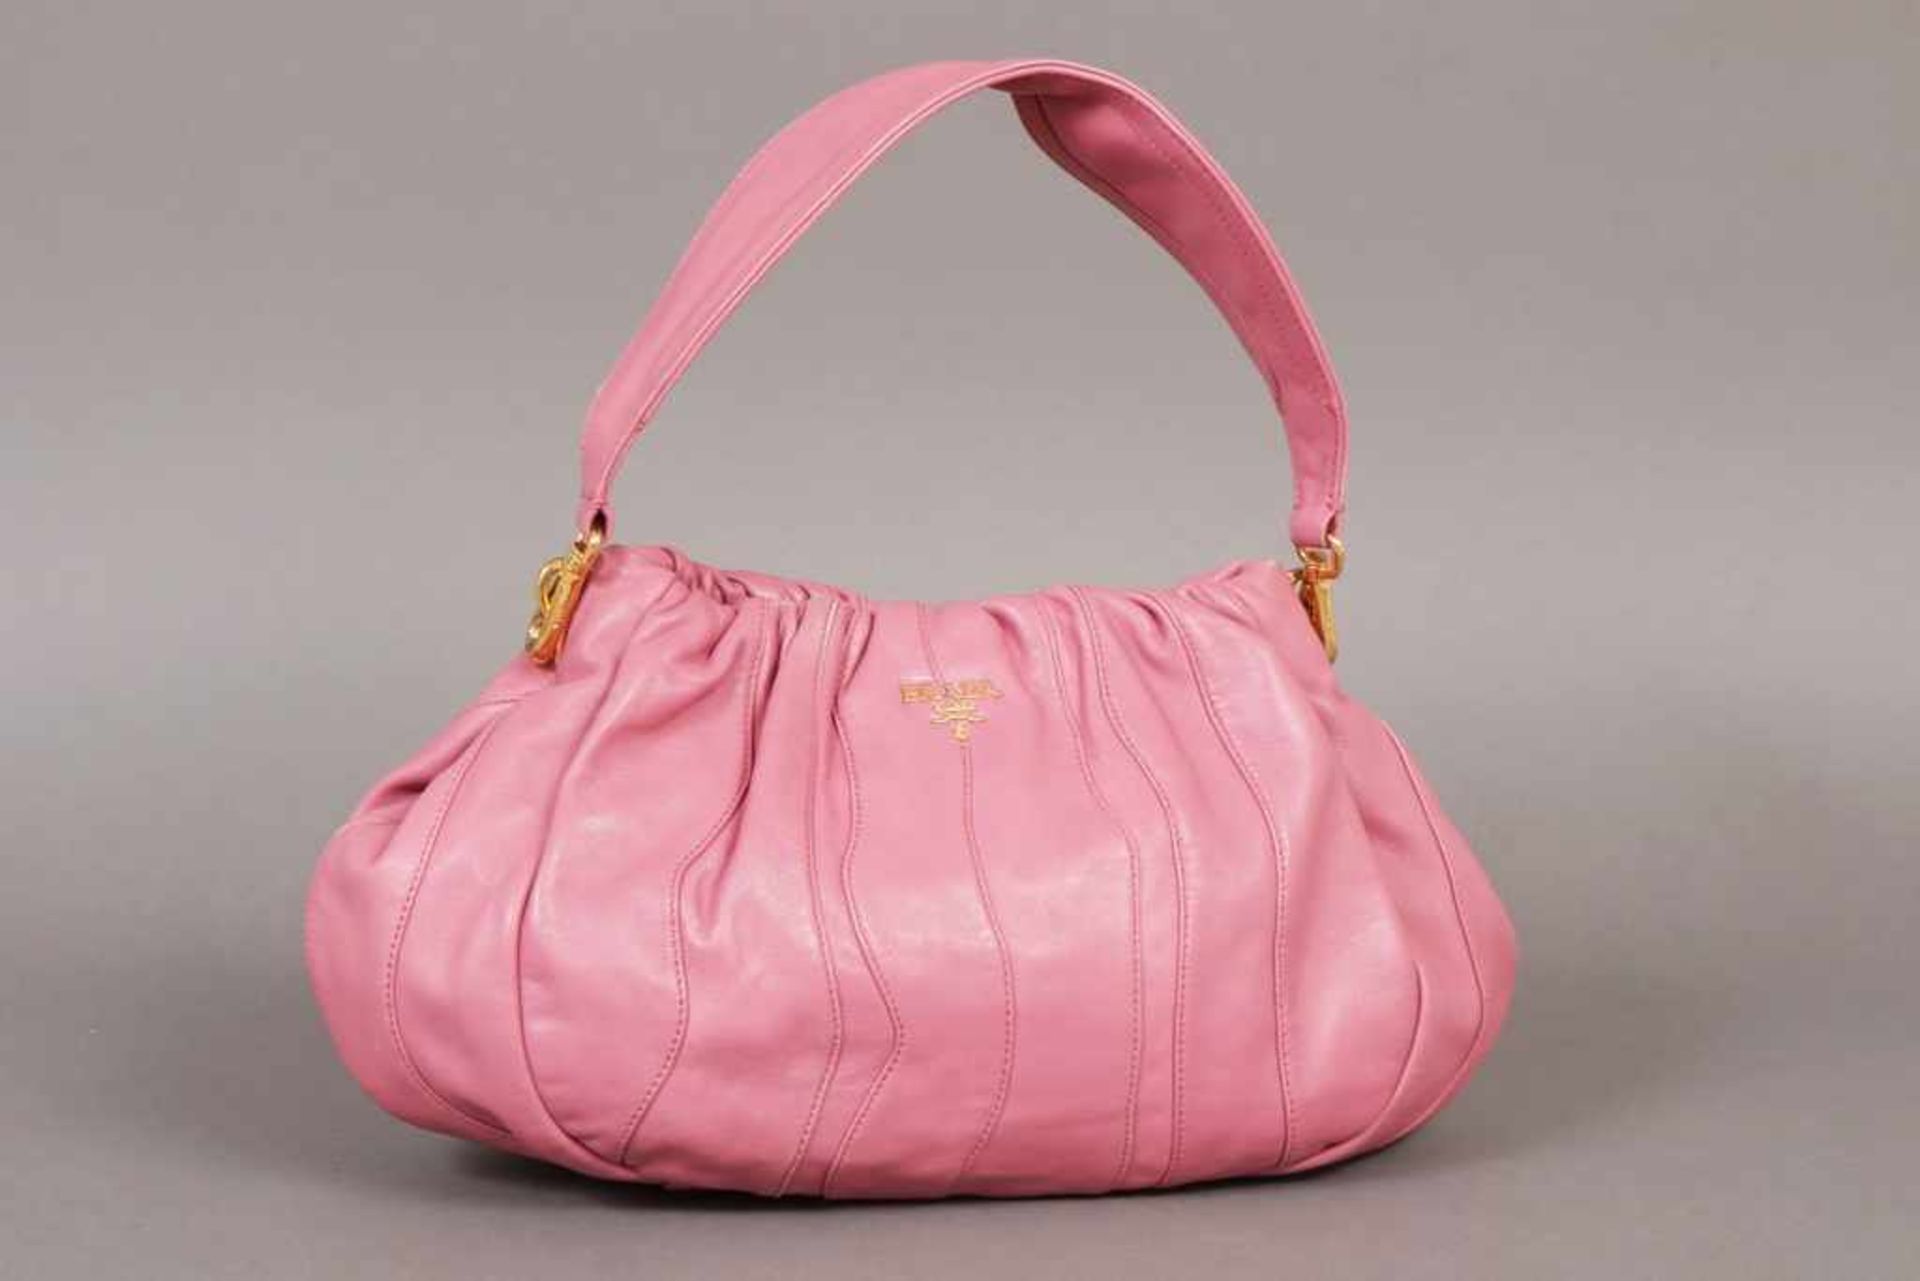 PRADA Handtasche rosa gefärbtes Glattleder, abnehmbare Trageriemen (Schulter und Arm), ca.